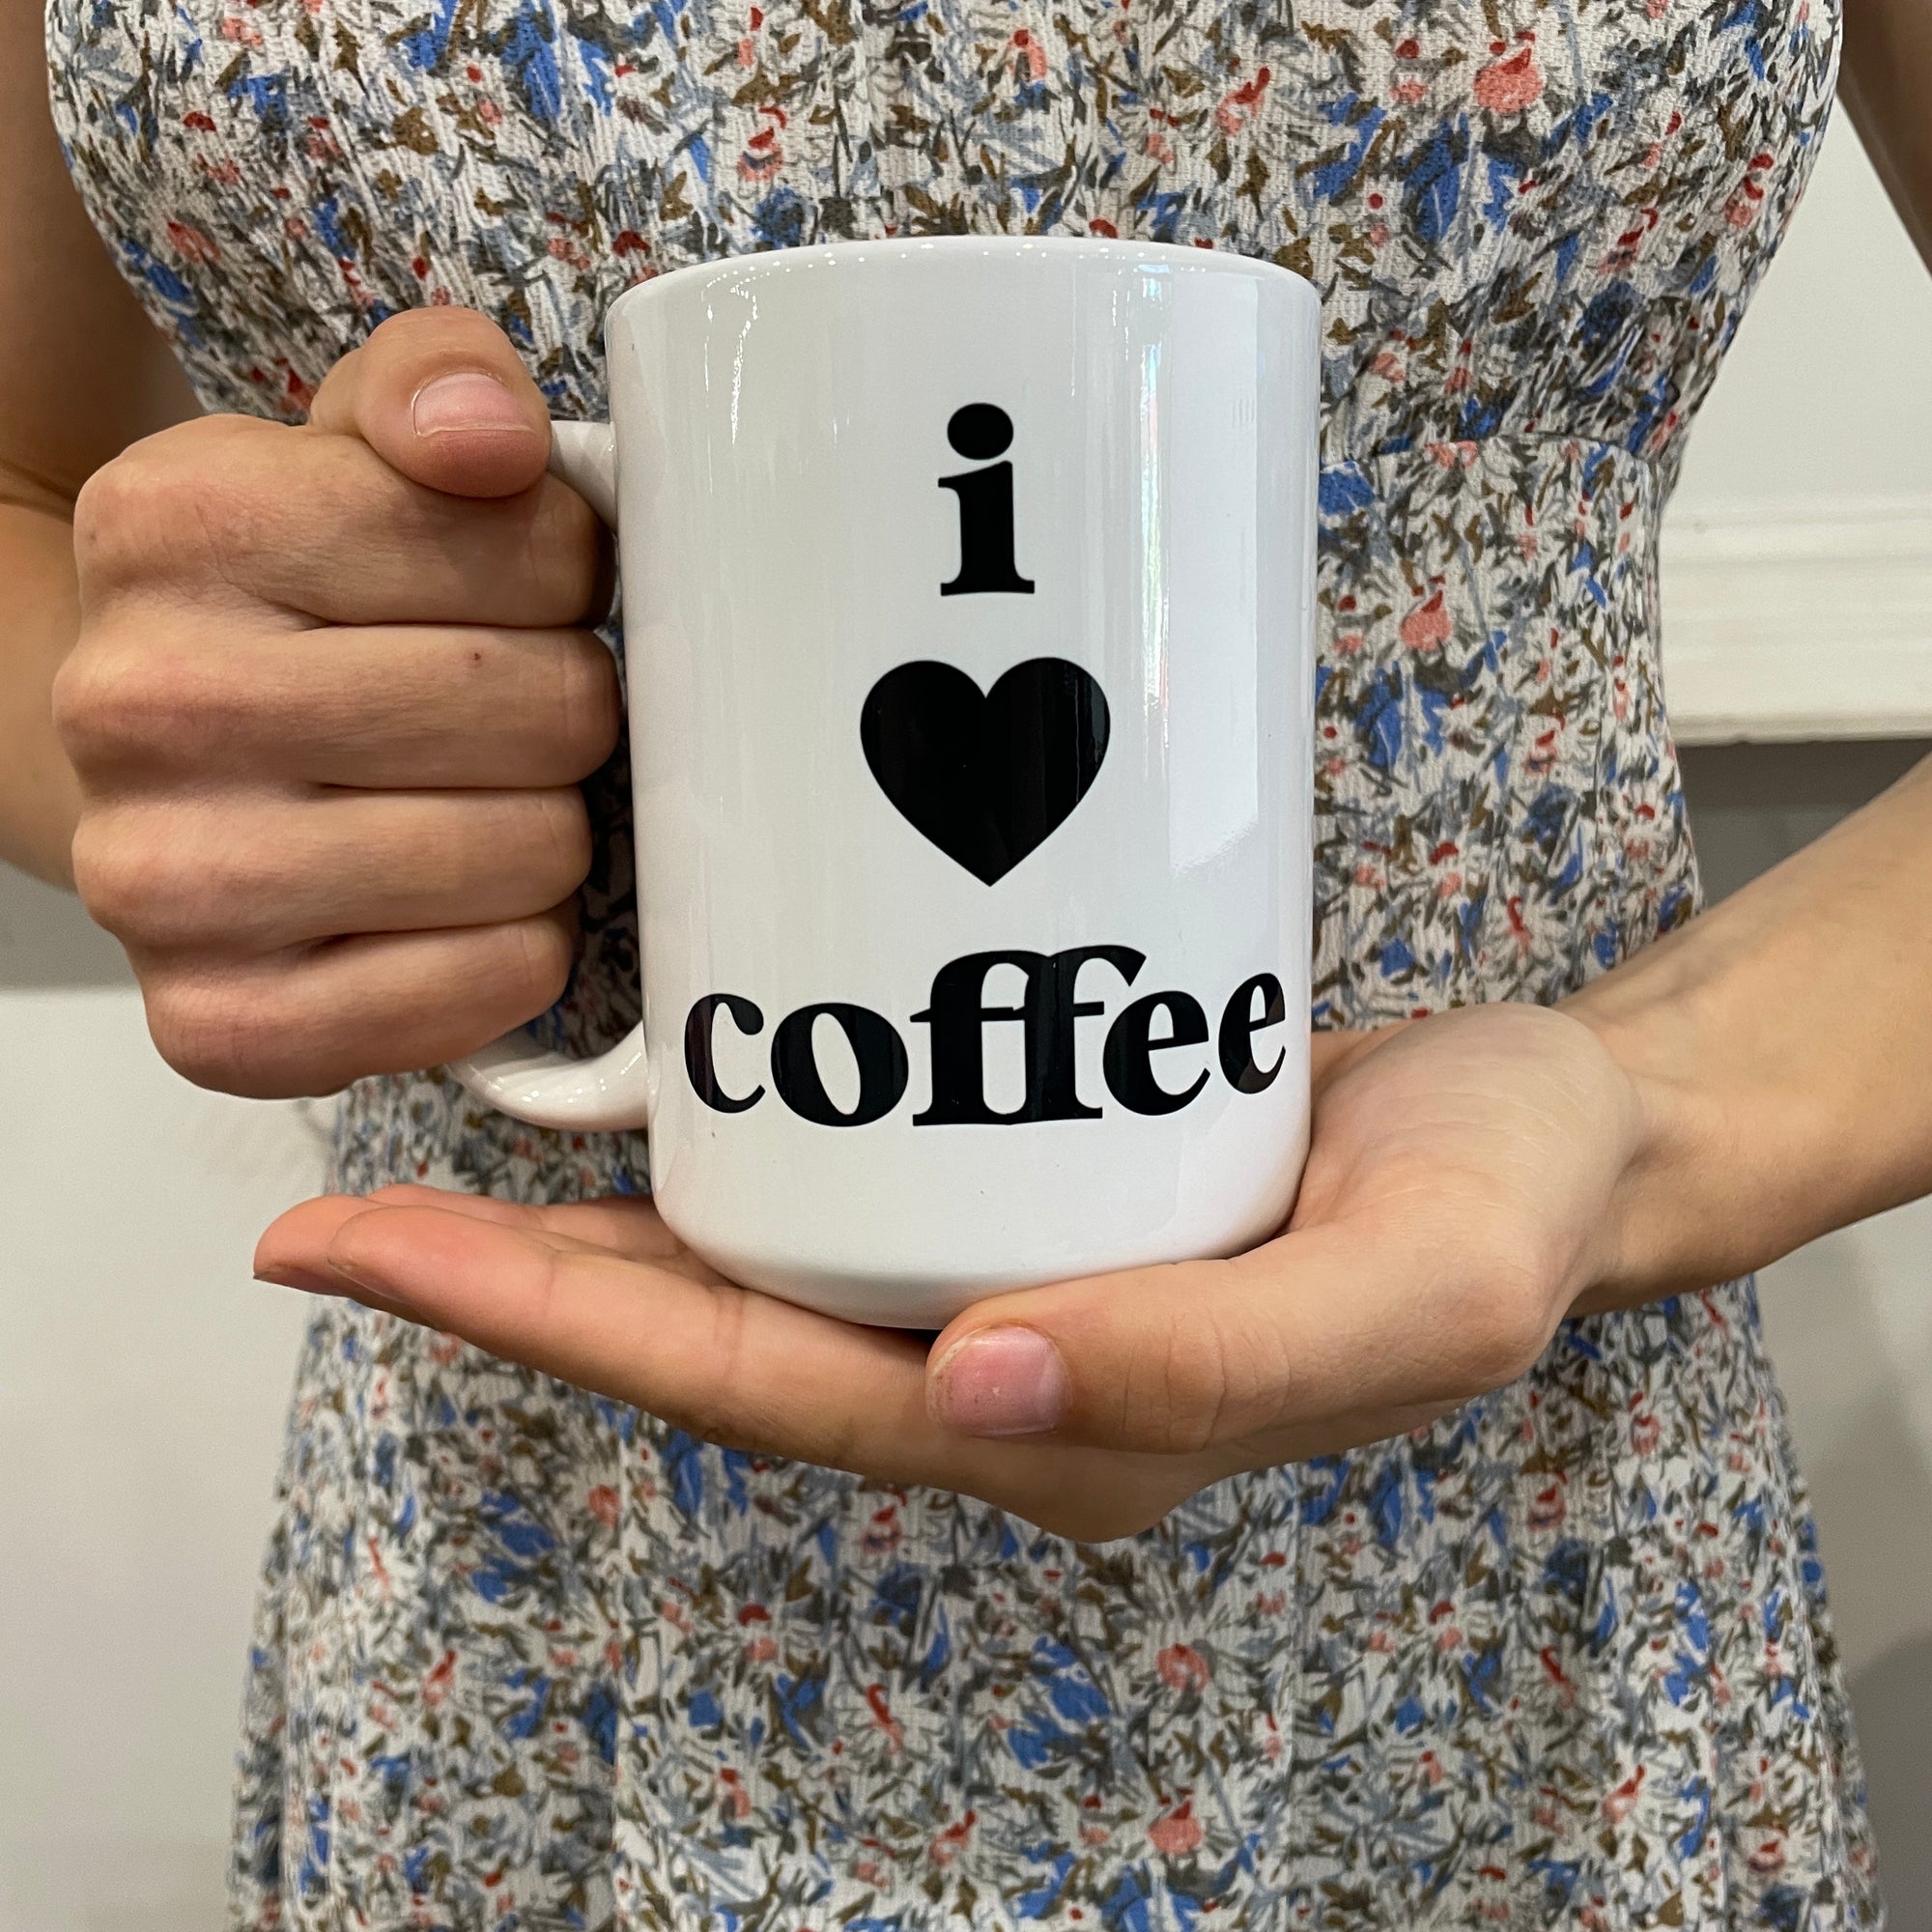 I love coffee mug